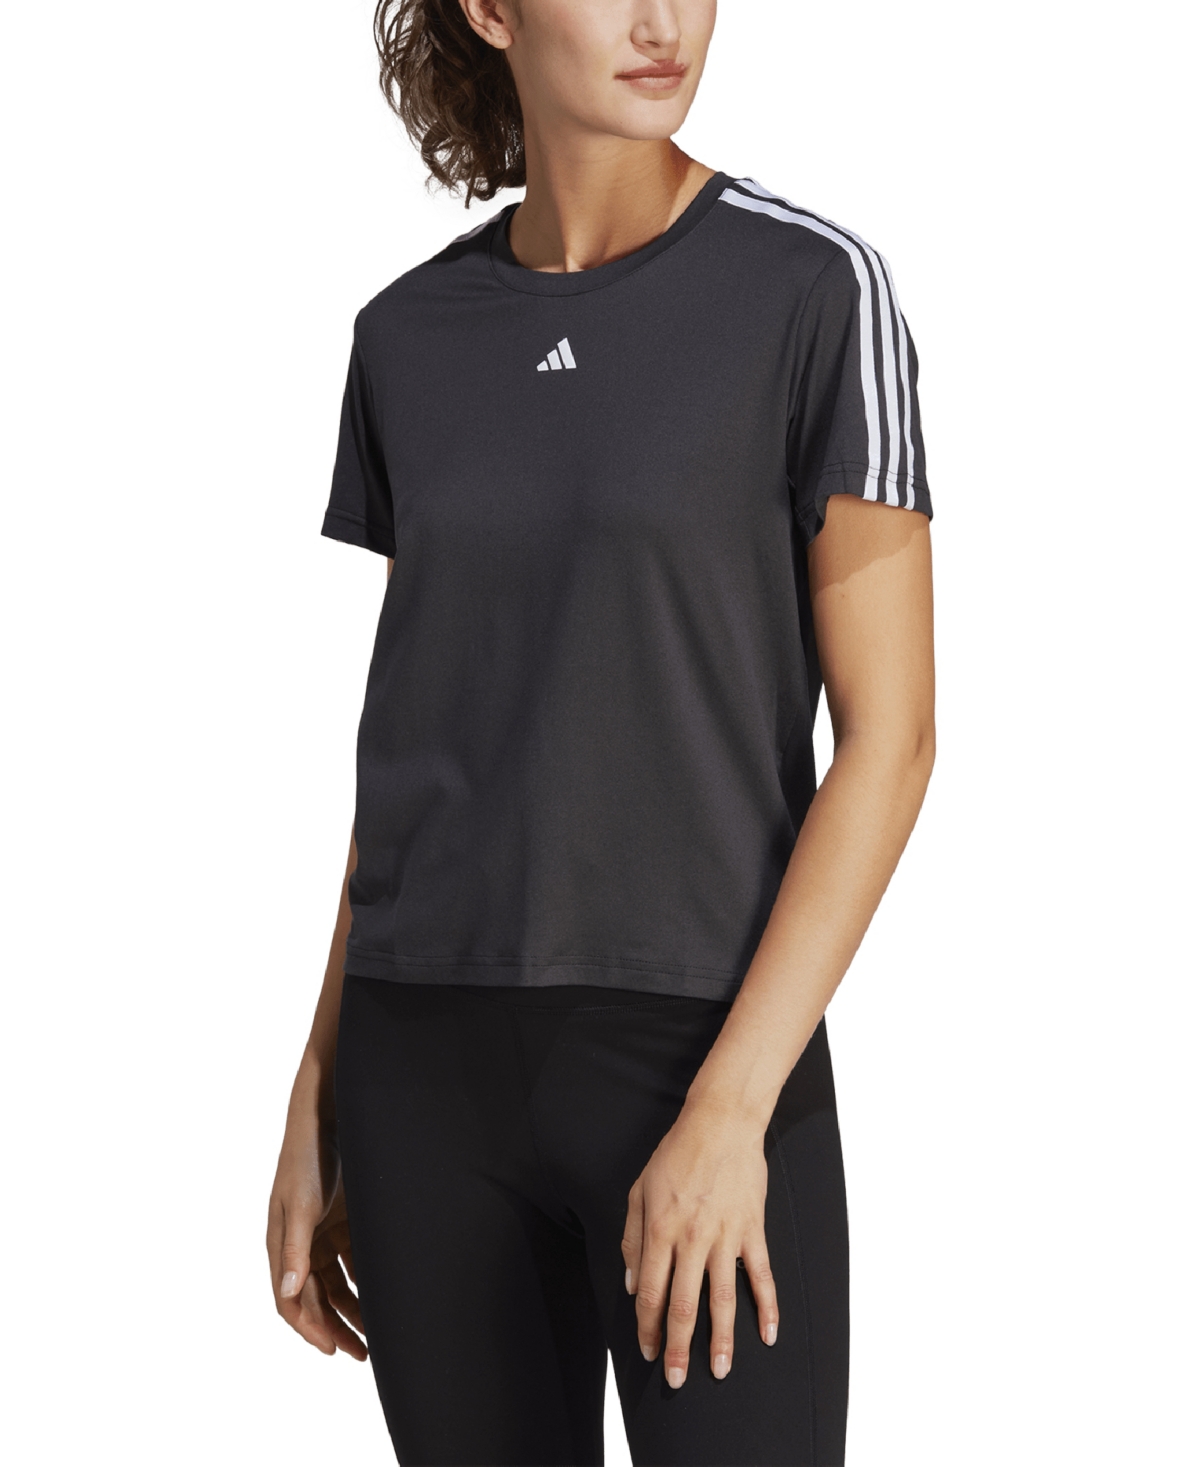 Adidas Originals Plus Size Aeroready Train Essentials 3-stripes T-shirt In Black